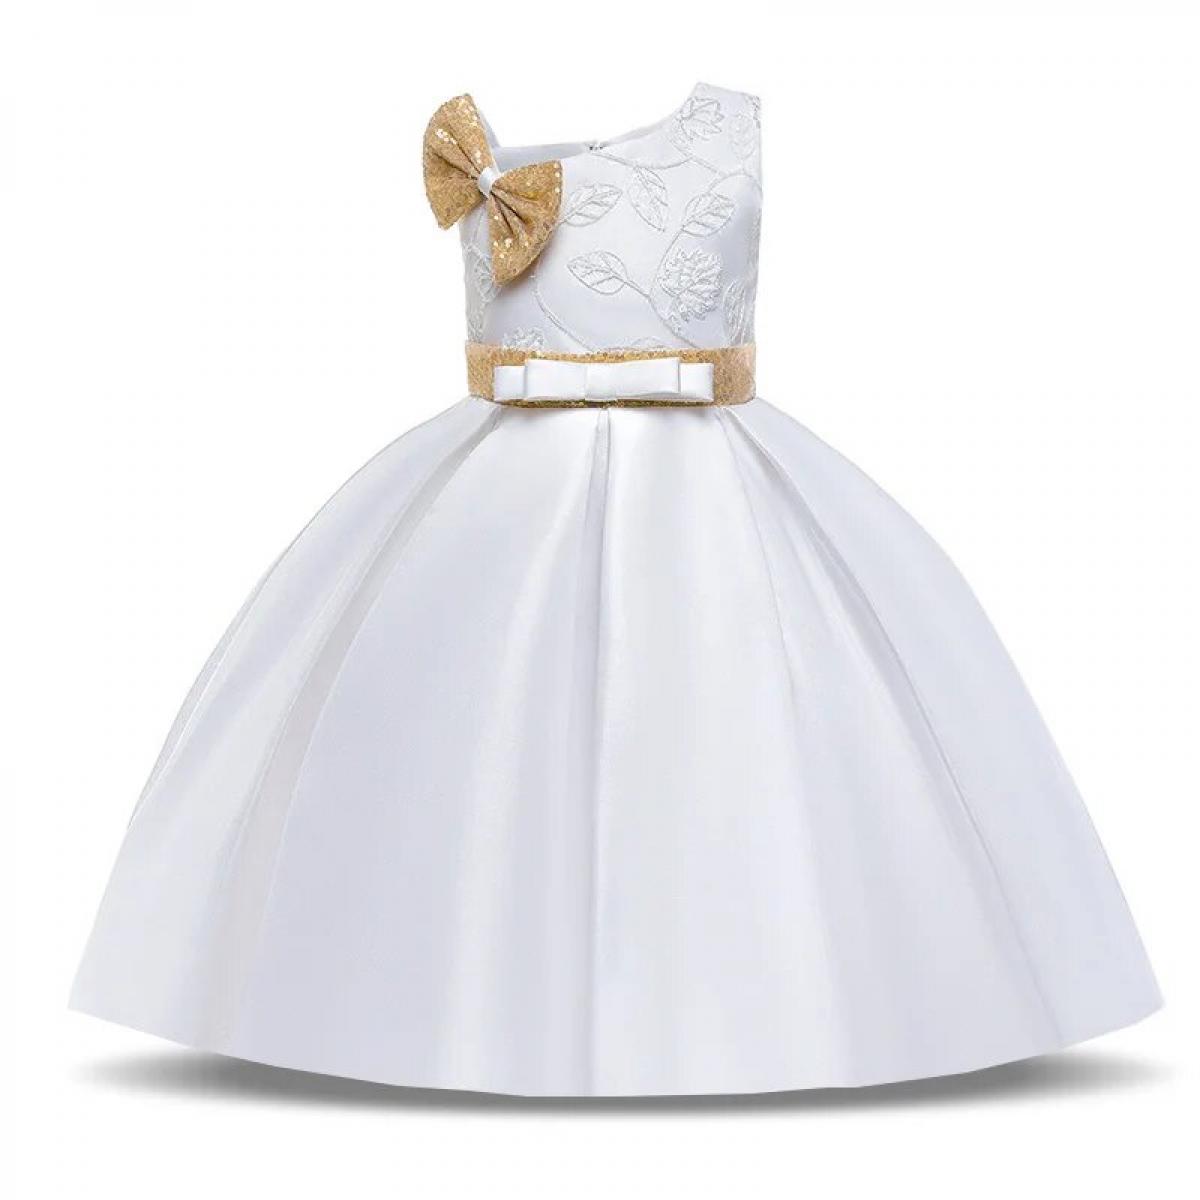 فستان أميرة بسيط للفتيات باللون الأبيض مزين بفيونكة للأطفال ملابس أطفال أنيقة مطرزة بالزهور لحفلات أعياد الميلاد وحفلات الزفاف